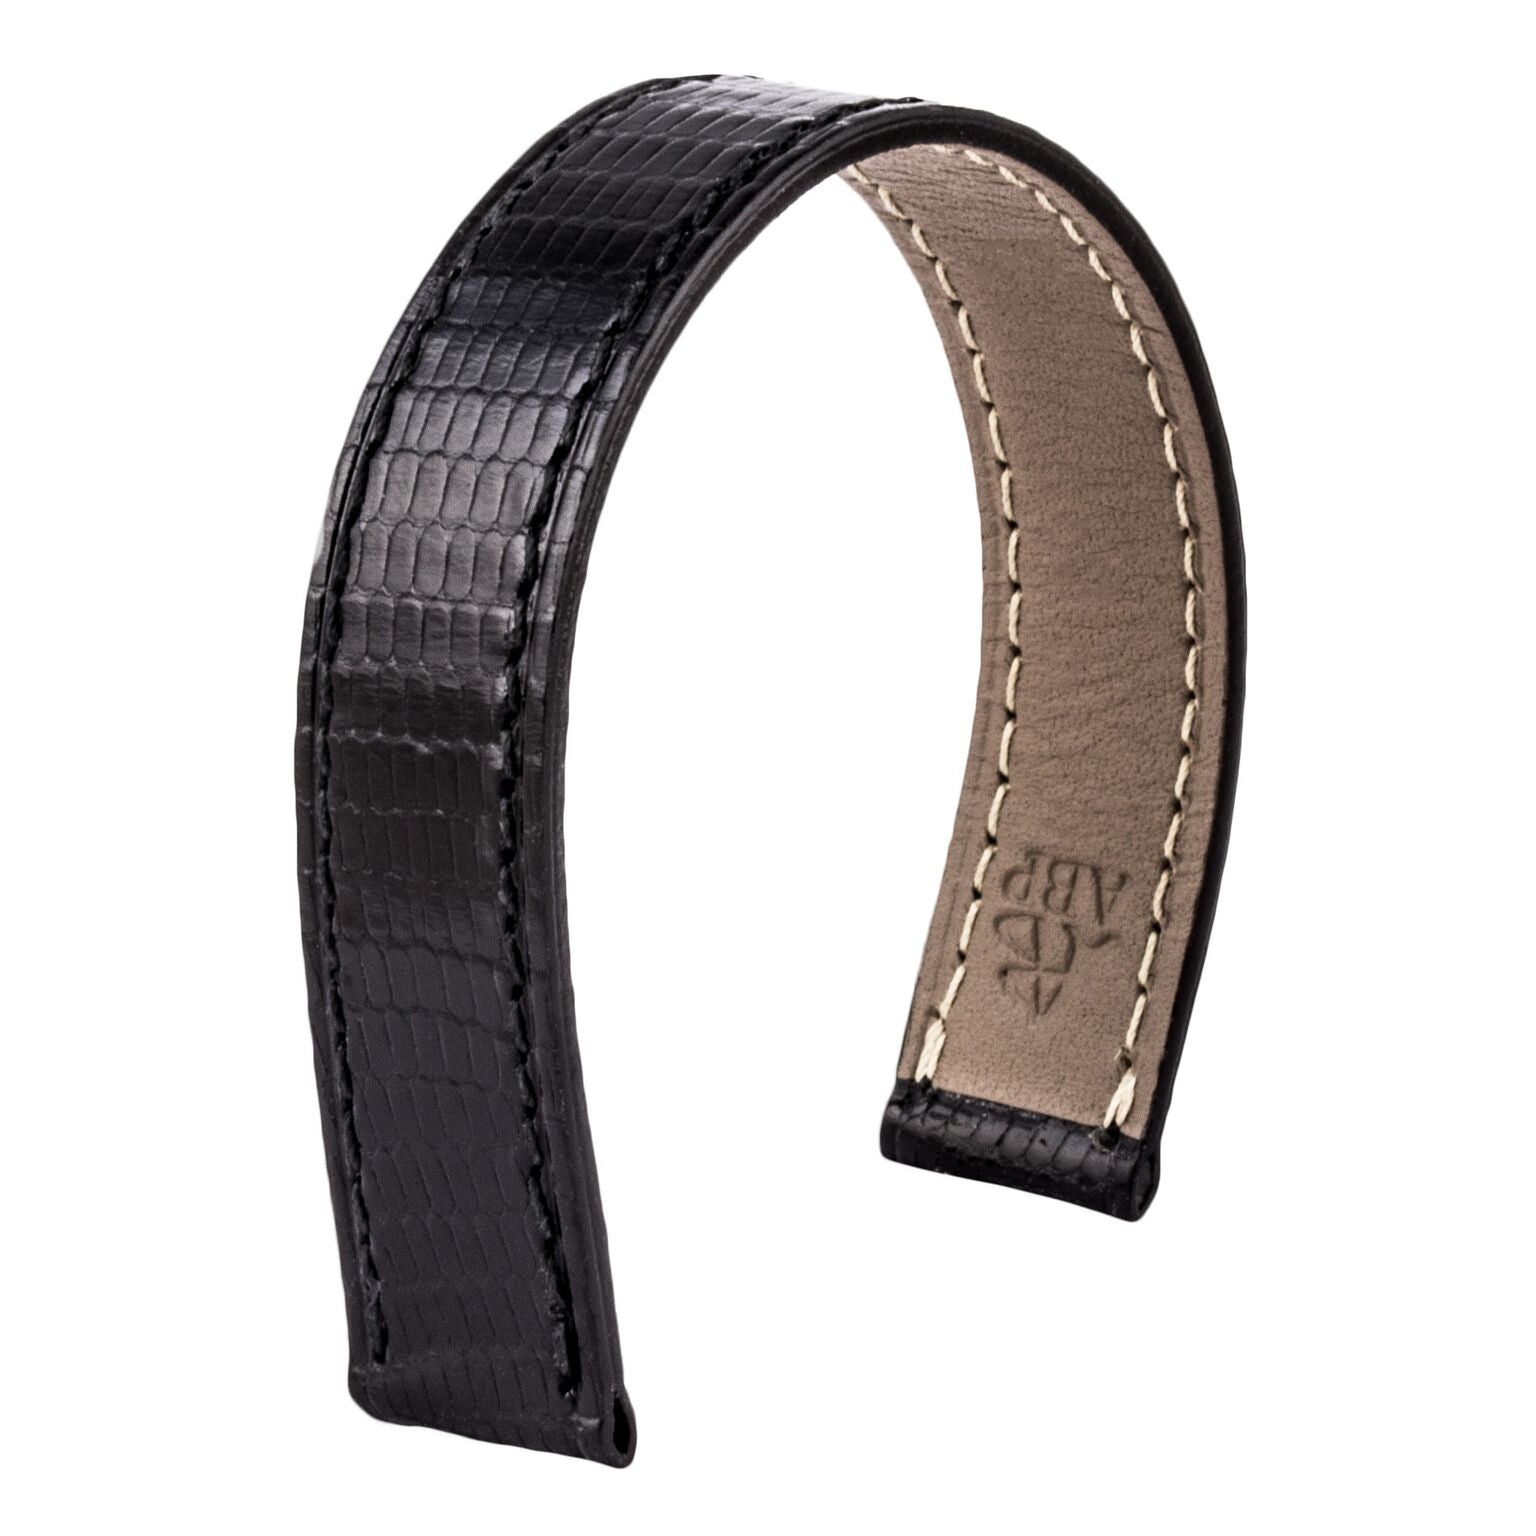 Bracelet-montre cuir - Poiray - Lézard noir - watch band leather strap - ABP Concept -